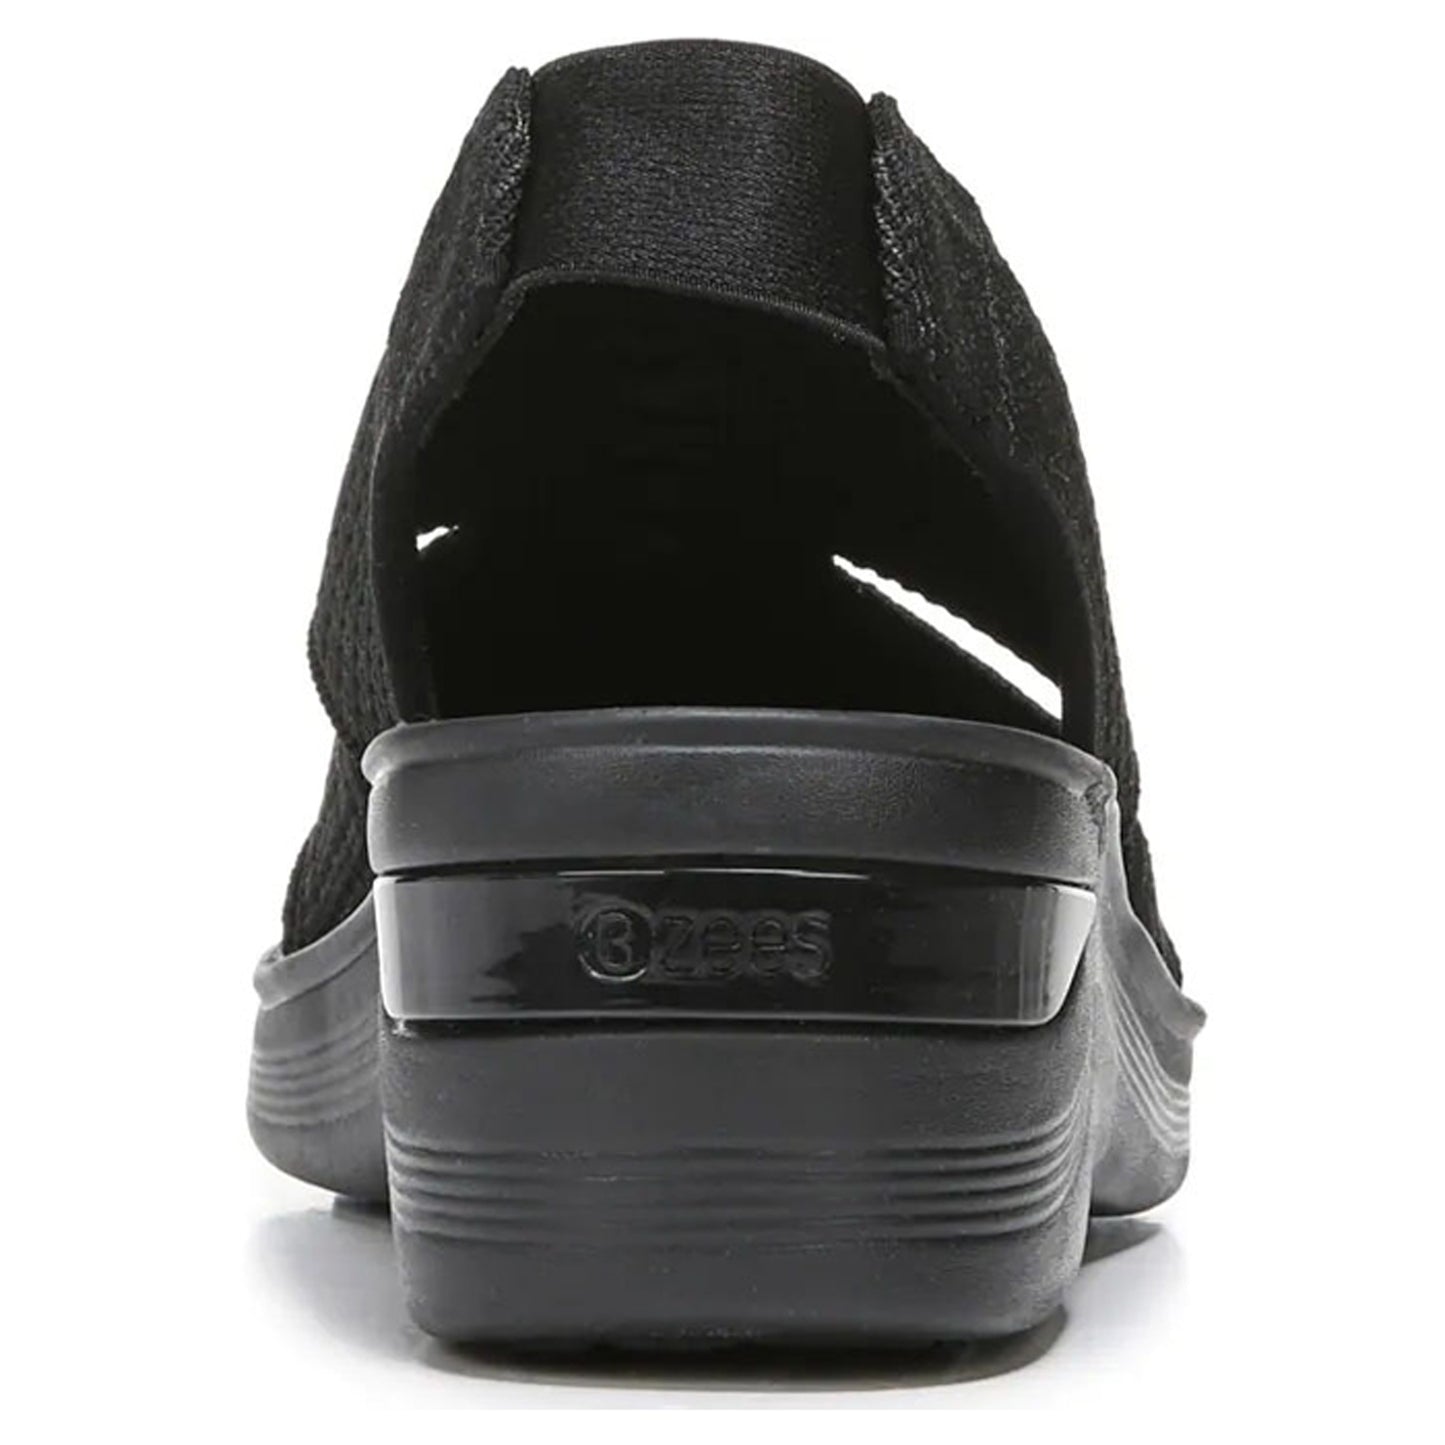 Peltz Shoes  Women's BZees Double Up Sandal BLACK KNIT H8864F2001